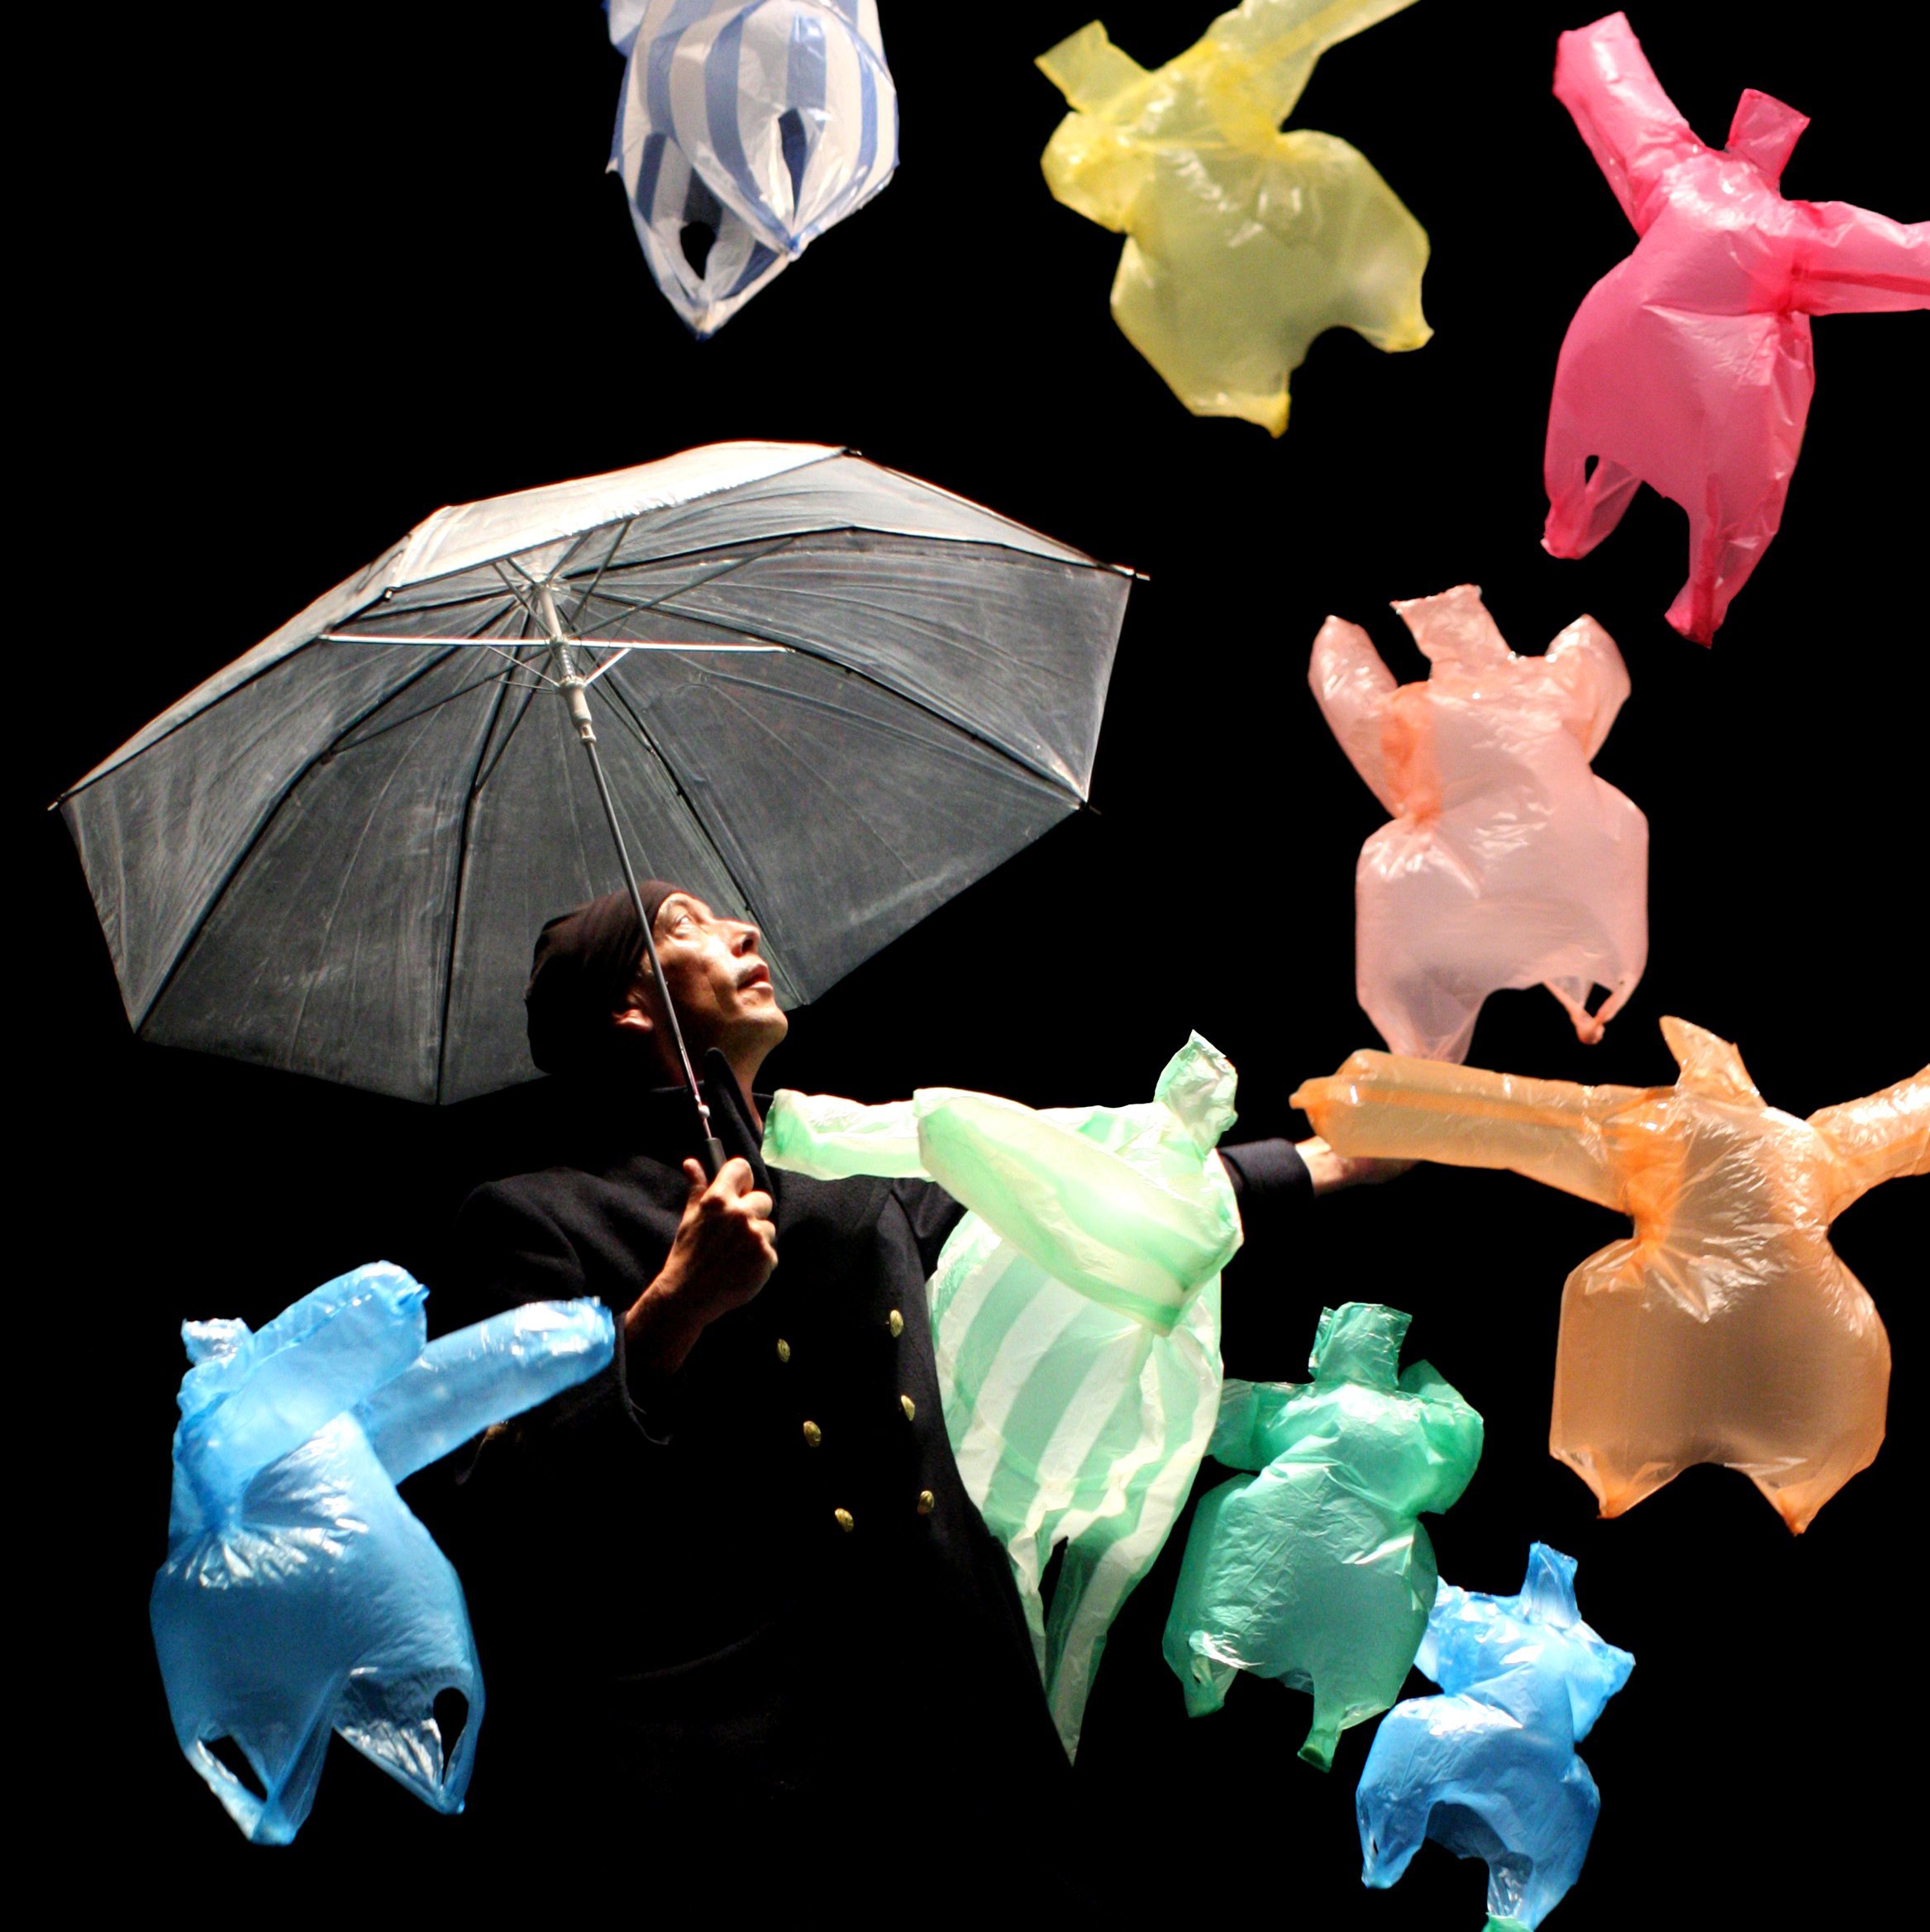 Eine Person mit Regenschirm, umgeben von fliegenden Plastikfiguren